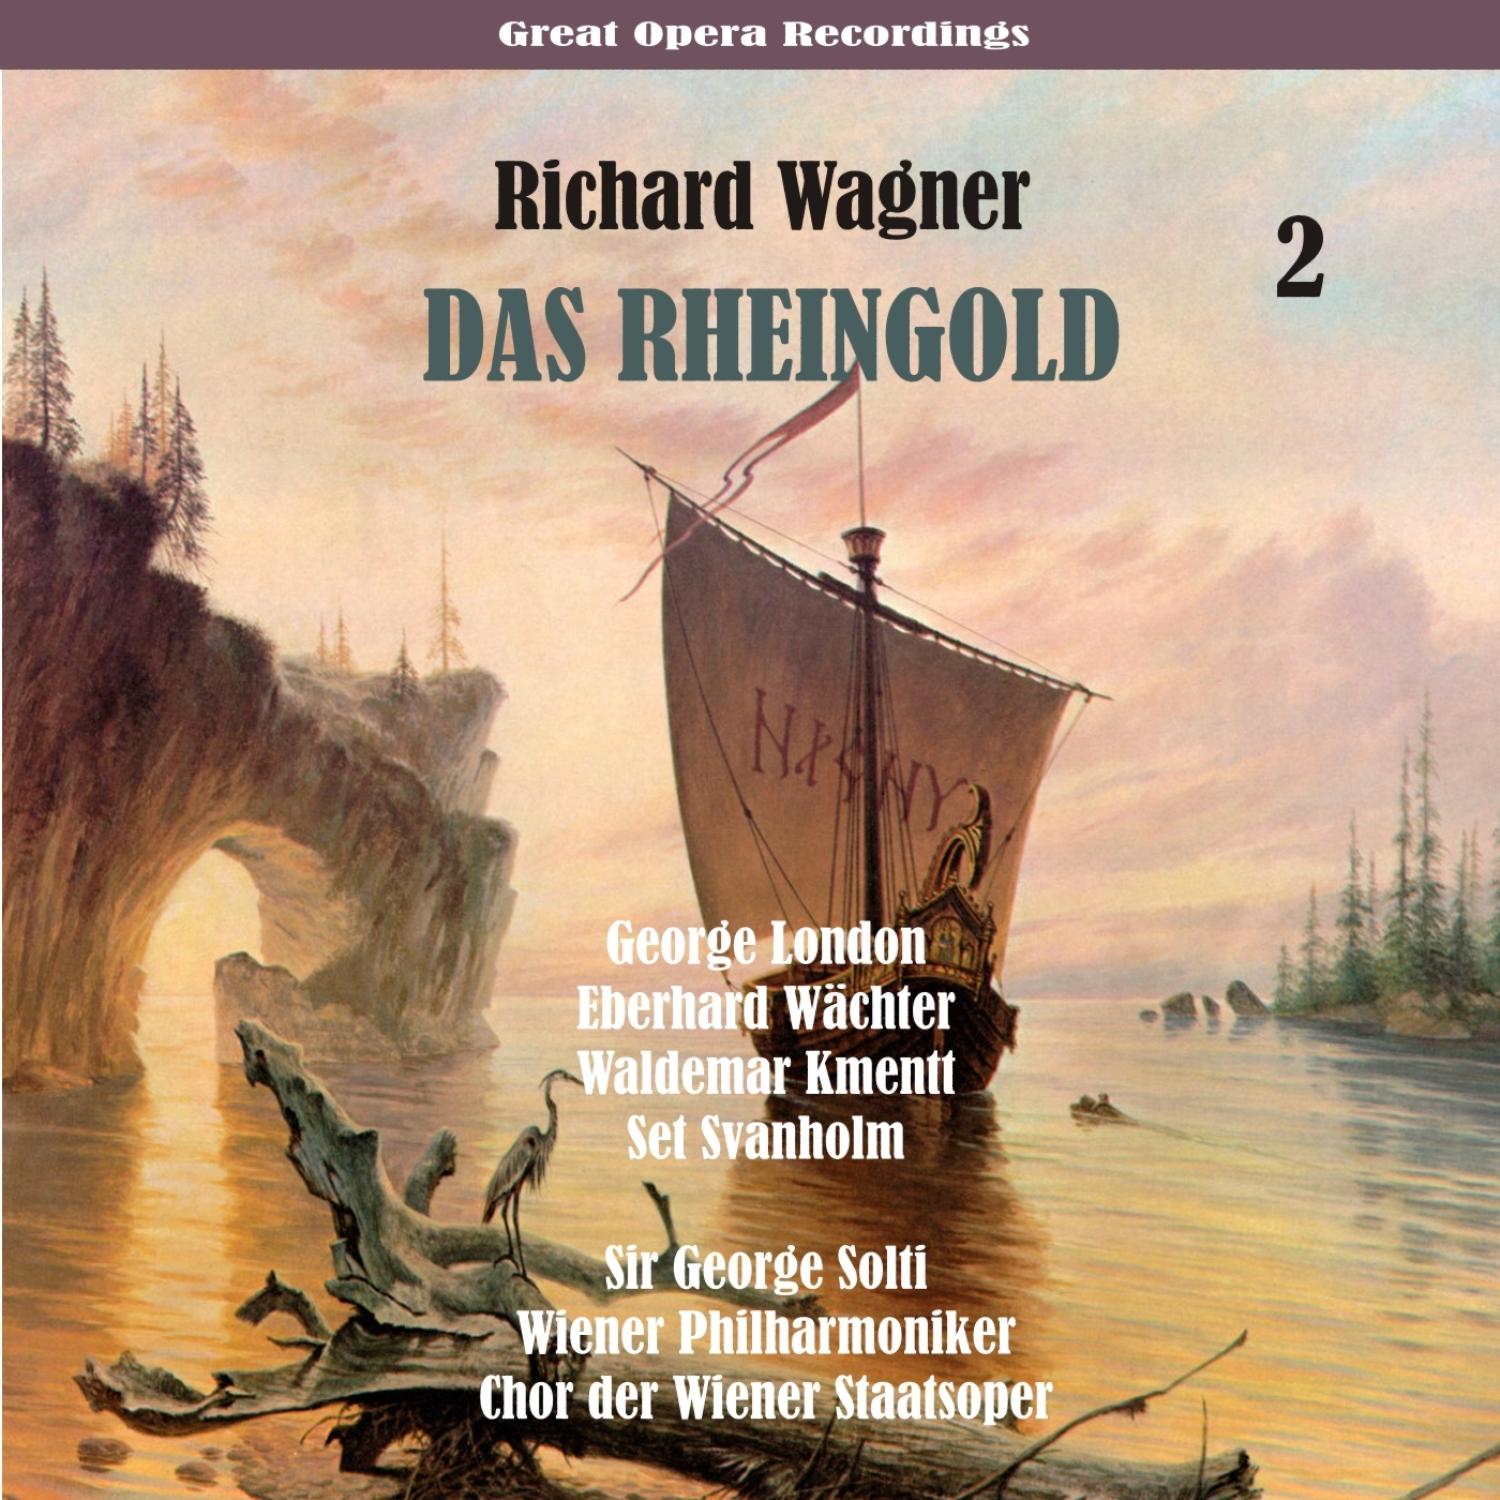 Richard Wagner: Das Rheingold (Solti, Wiener Philharmoniker) [1958], Volume 2